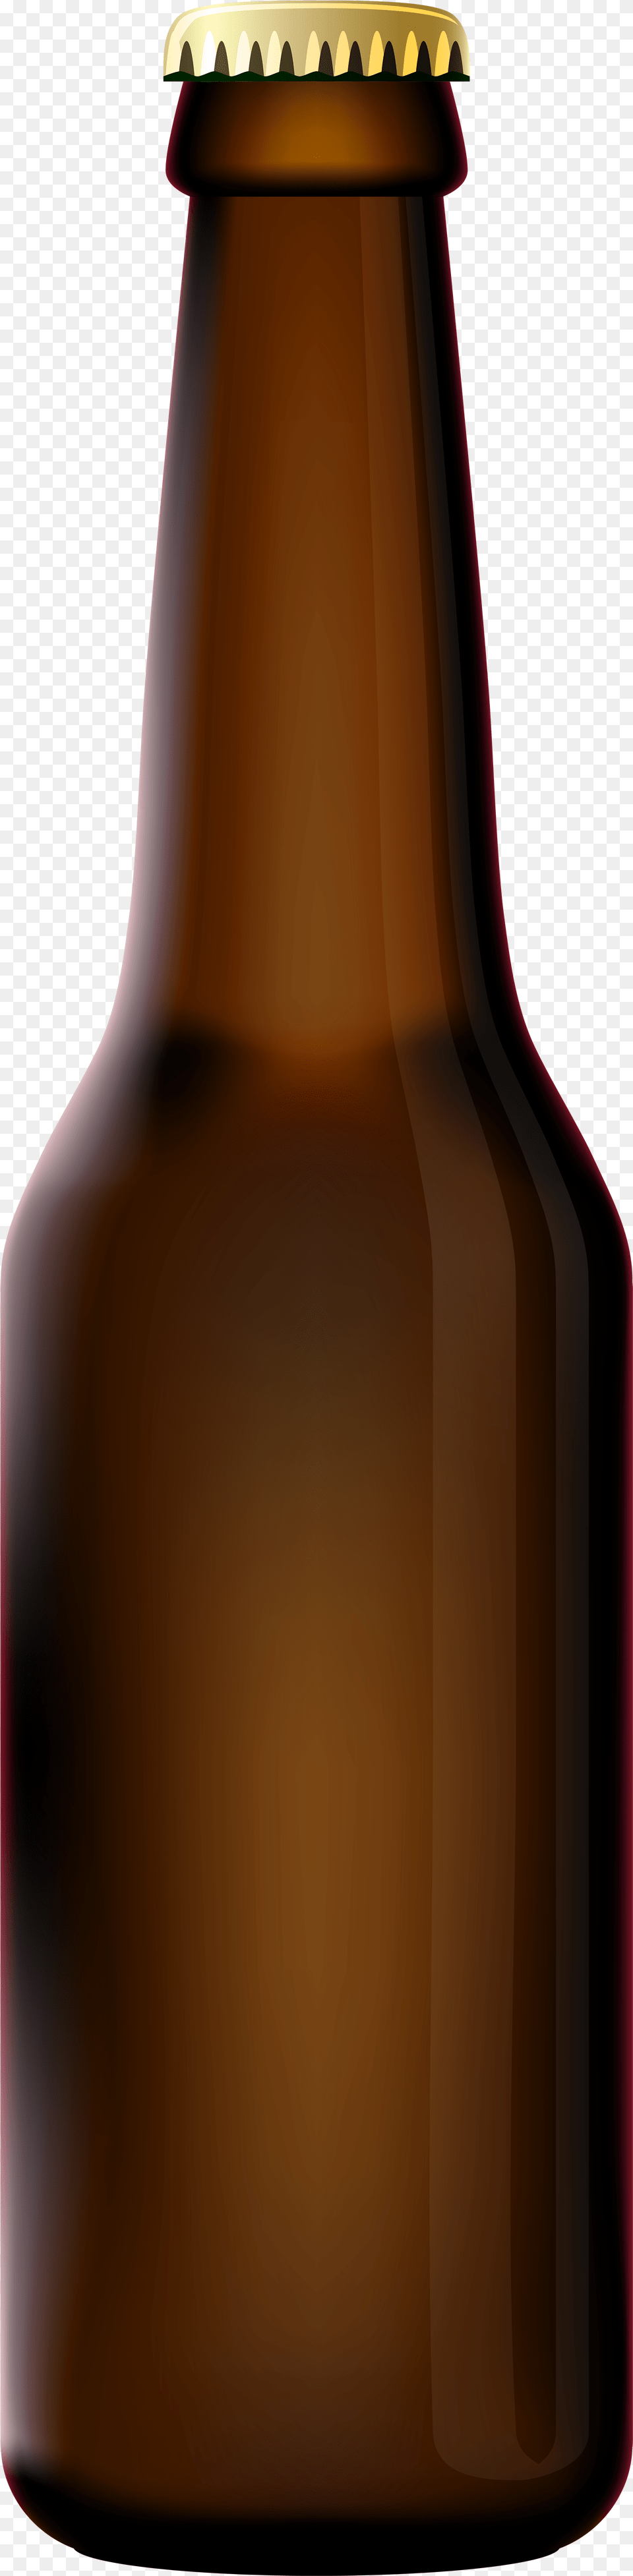 Beer Bottle Transparent Beer Bottle, Alcohol, Beer Bottle, Beverage, Liquor Png Image